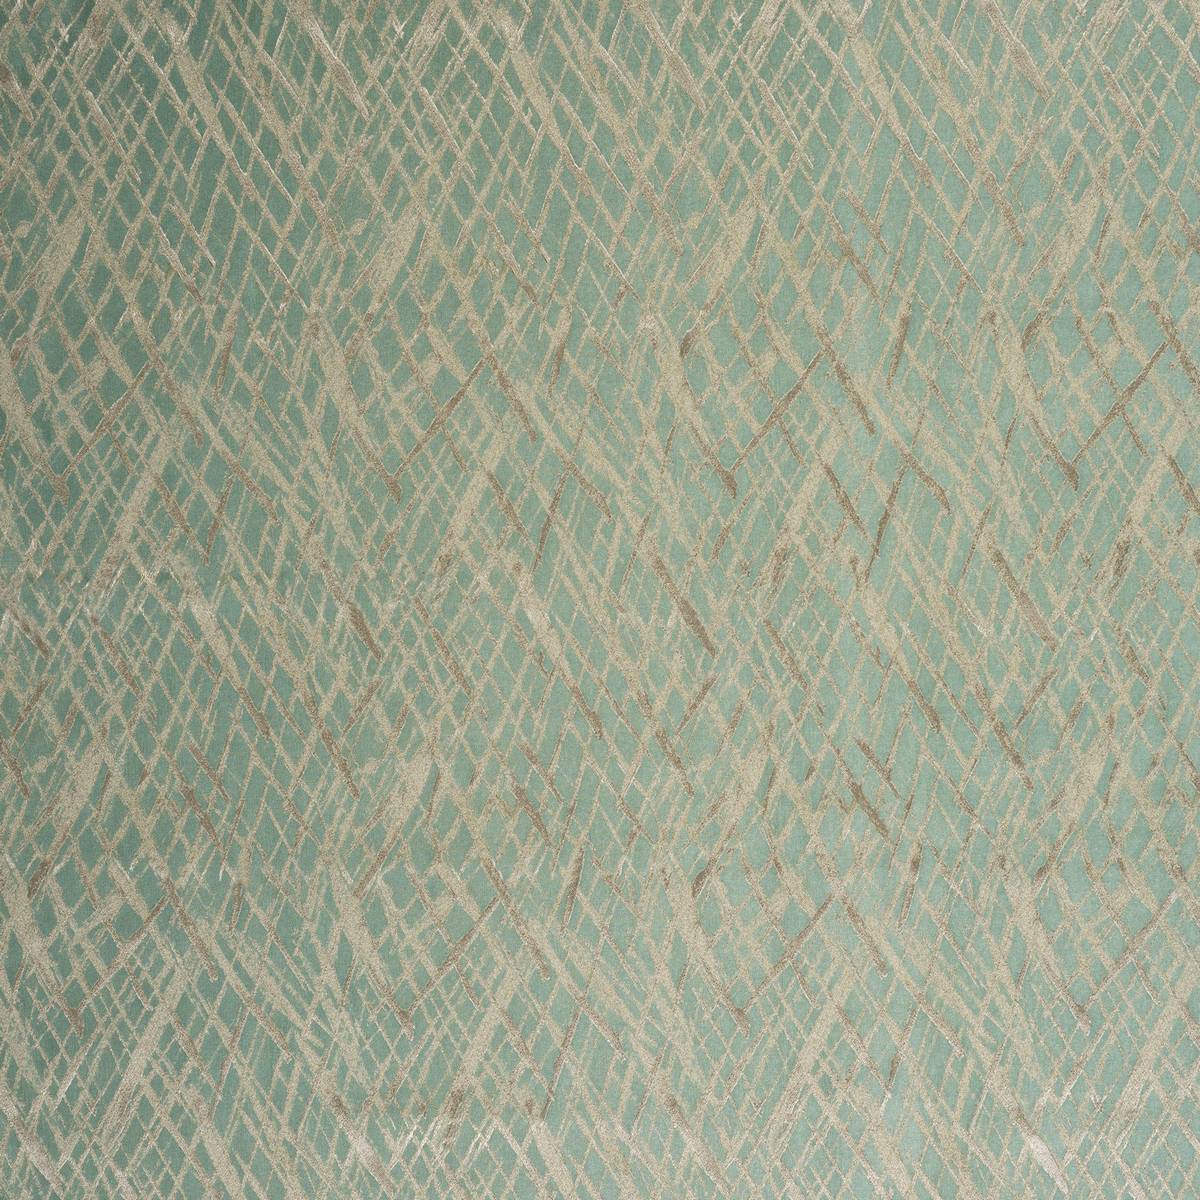 Vittata Seafoam Fabric by Ashley Wilde